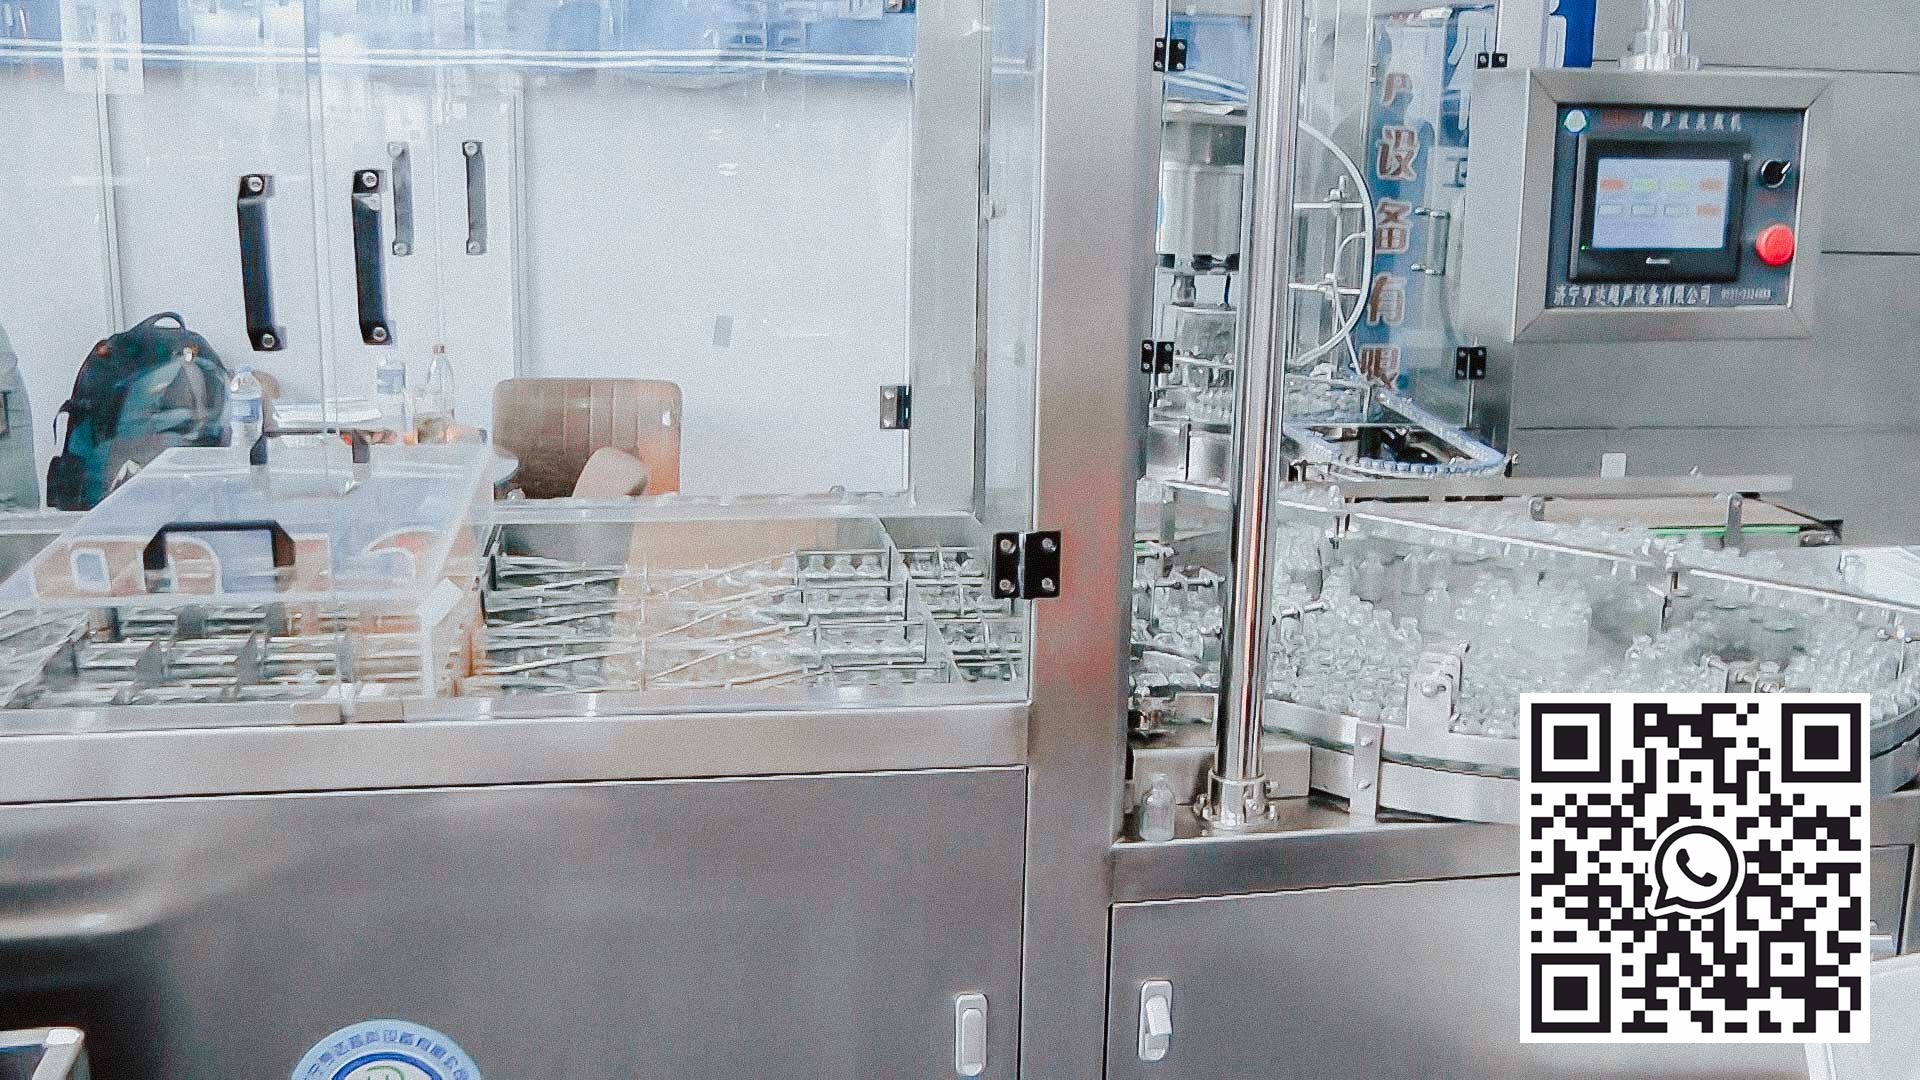 آلة أوتوماتيكية لغسيل وتعقيم زجاجات البنسلين الزجاجية